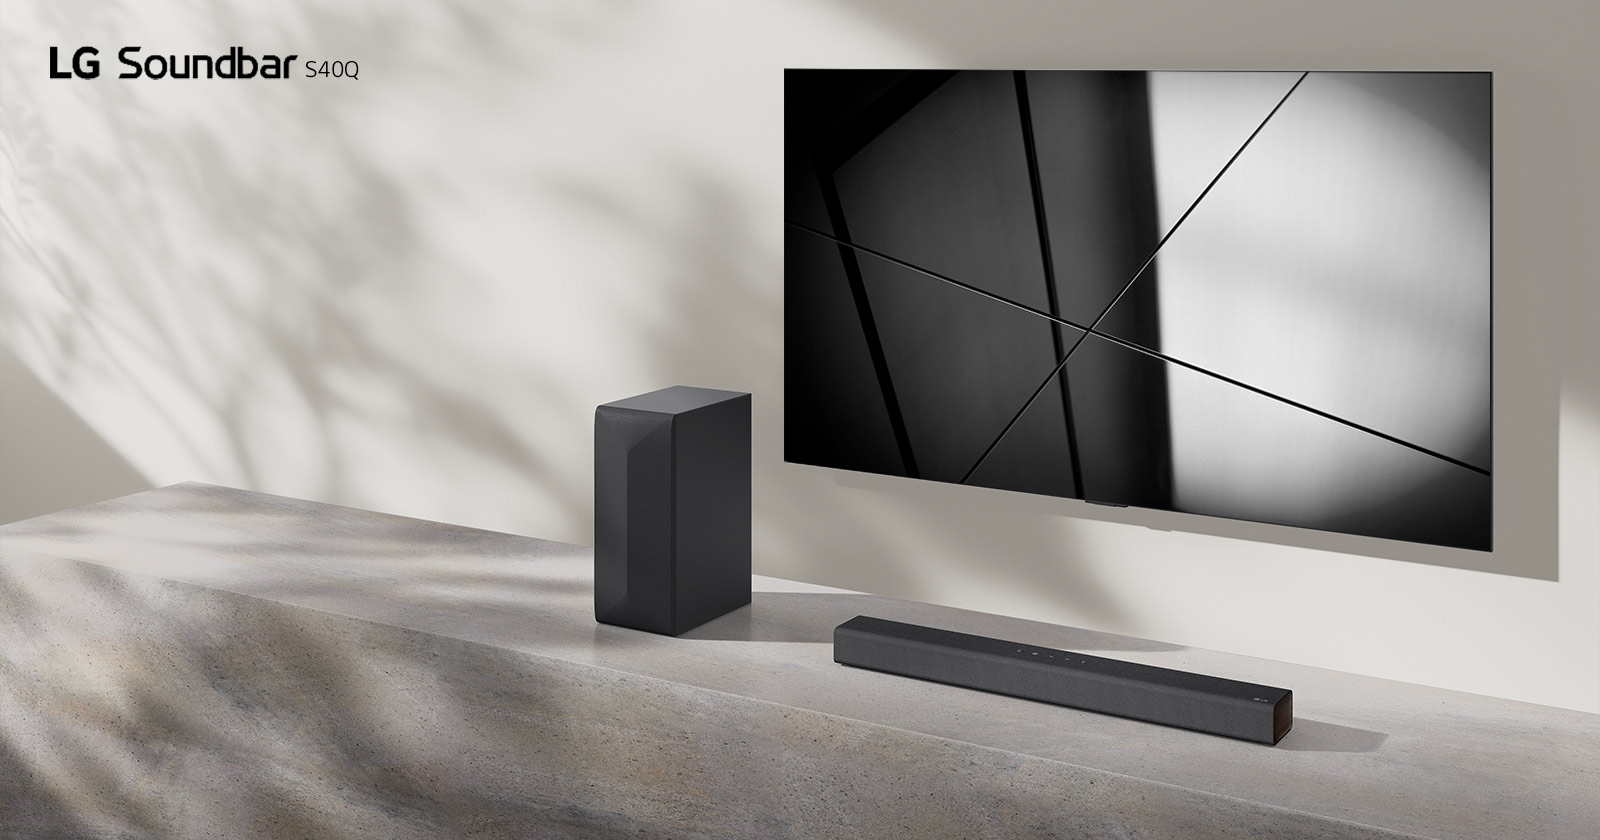 La barra de sonido LG S40Q y el televisor LG se colocan juntos en la sala de estar. El televisor está encendido, mostrando una imagen geométrica.